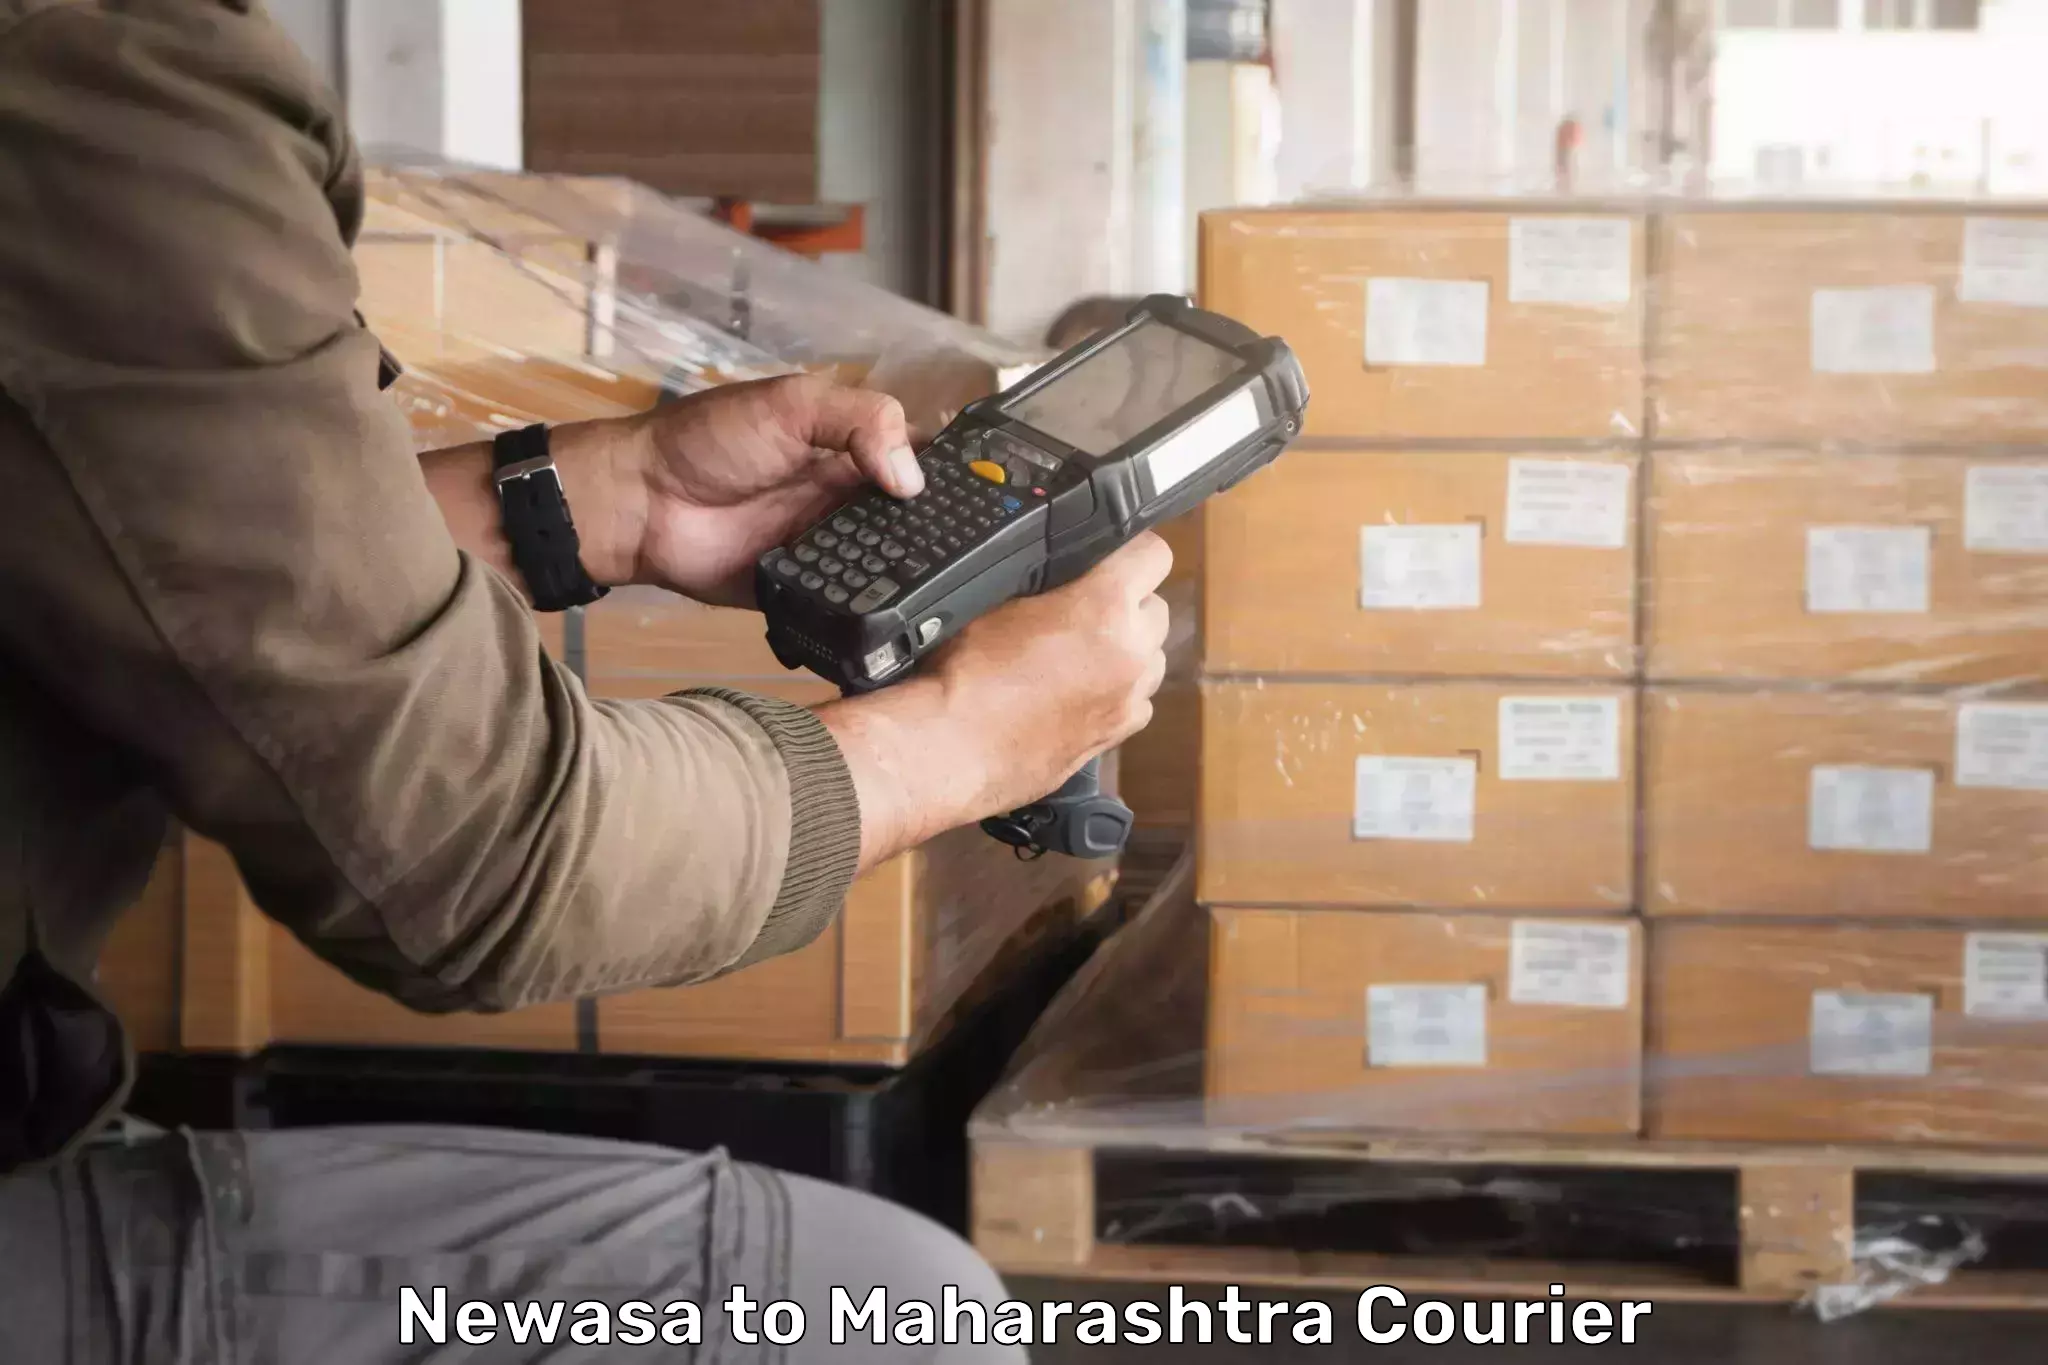 Round-the-clock parcel delivery Newasa to Maharashtra